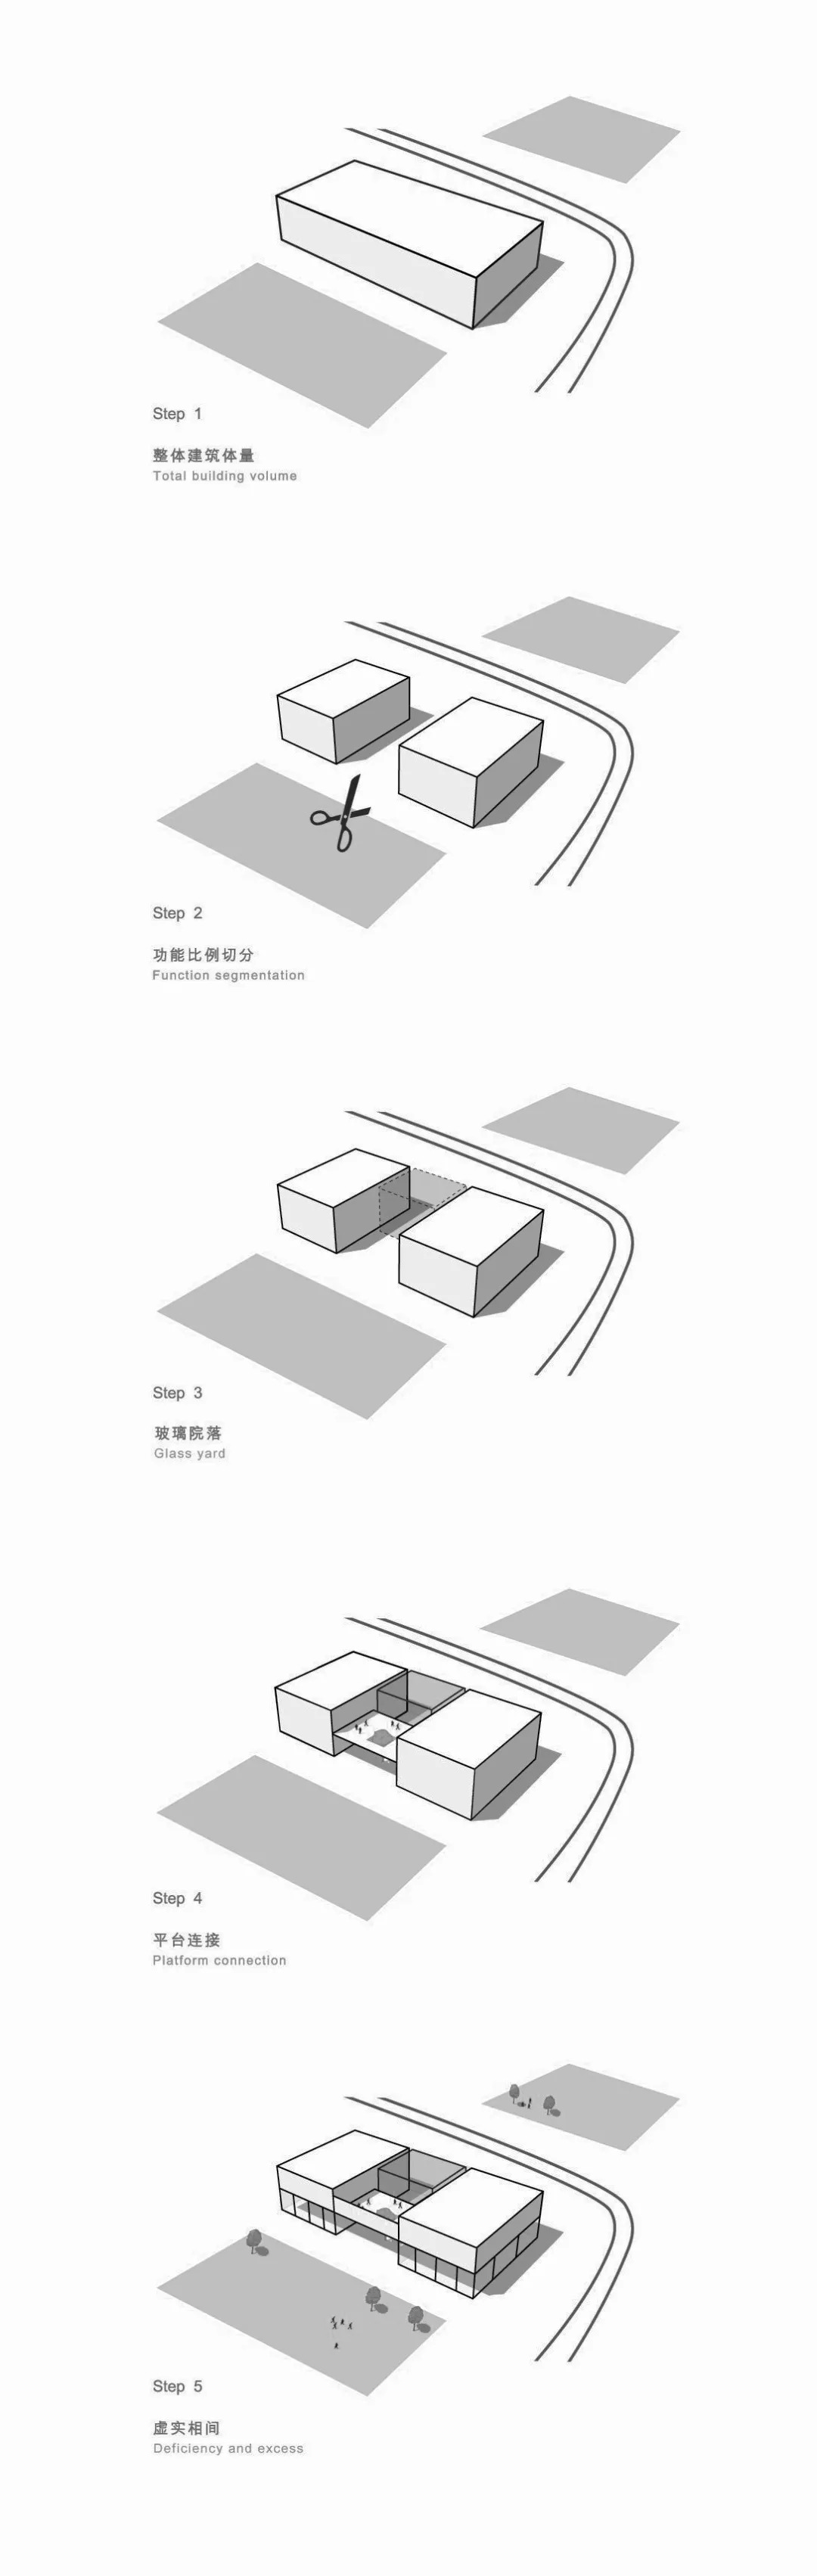 郑州万科企业馆  建筑设计 /  ORIA和睿设计